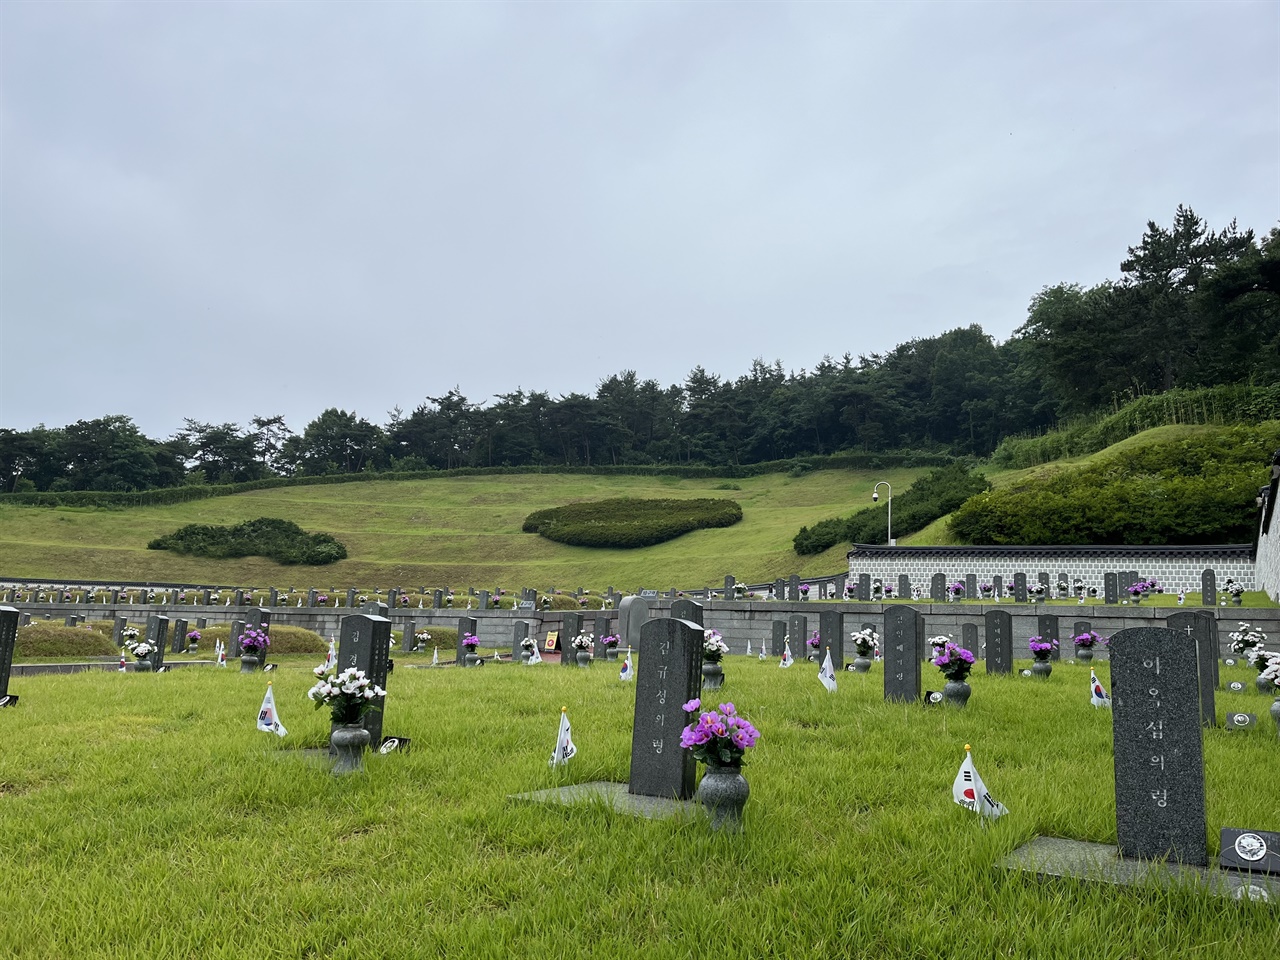  국립 5.18 민주 묘지의 10구역 모습. 봉분이 없고, 묘비의 이름 아래 '묘' 대신 '령'이라고 적혀있다. 그 너머로 봉분이 있는 묘가 줄지어 있는 모습이 보인다.